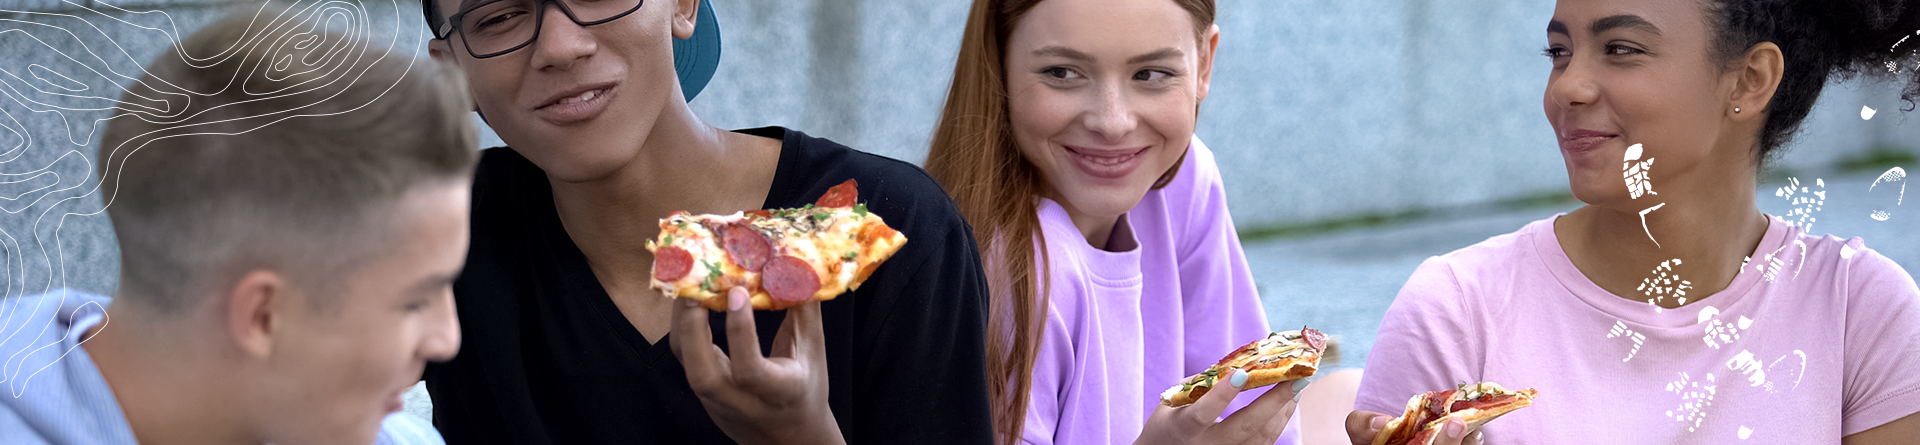 unge der spiser pizzA